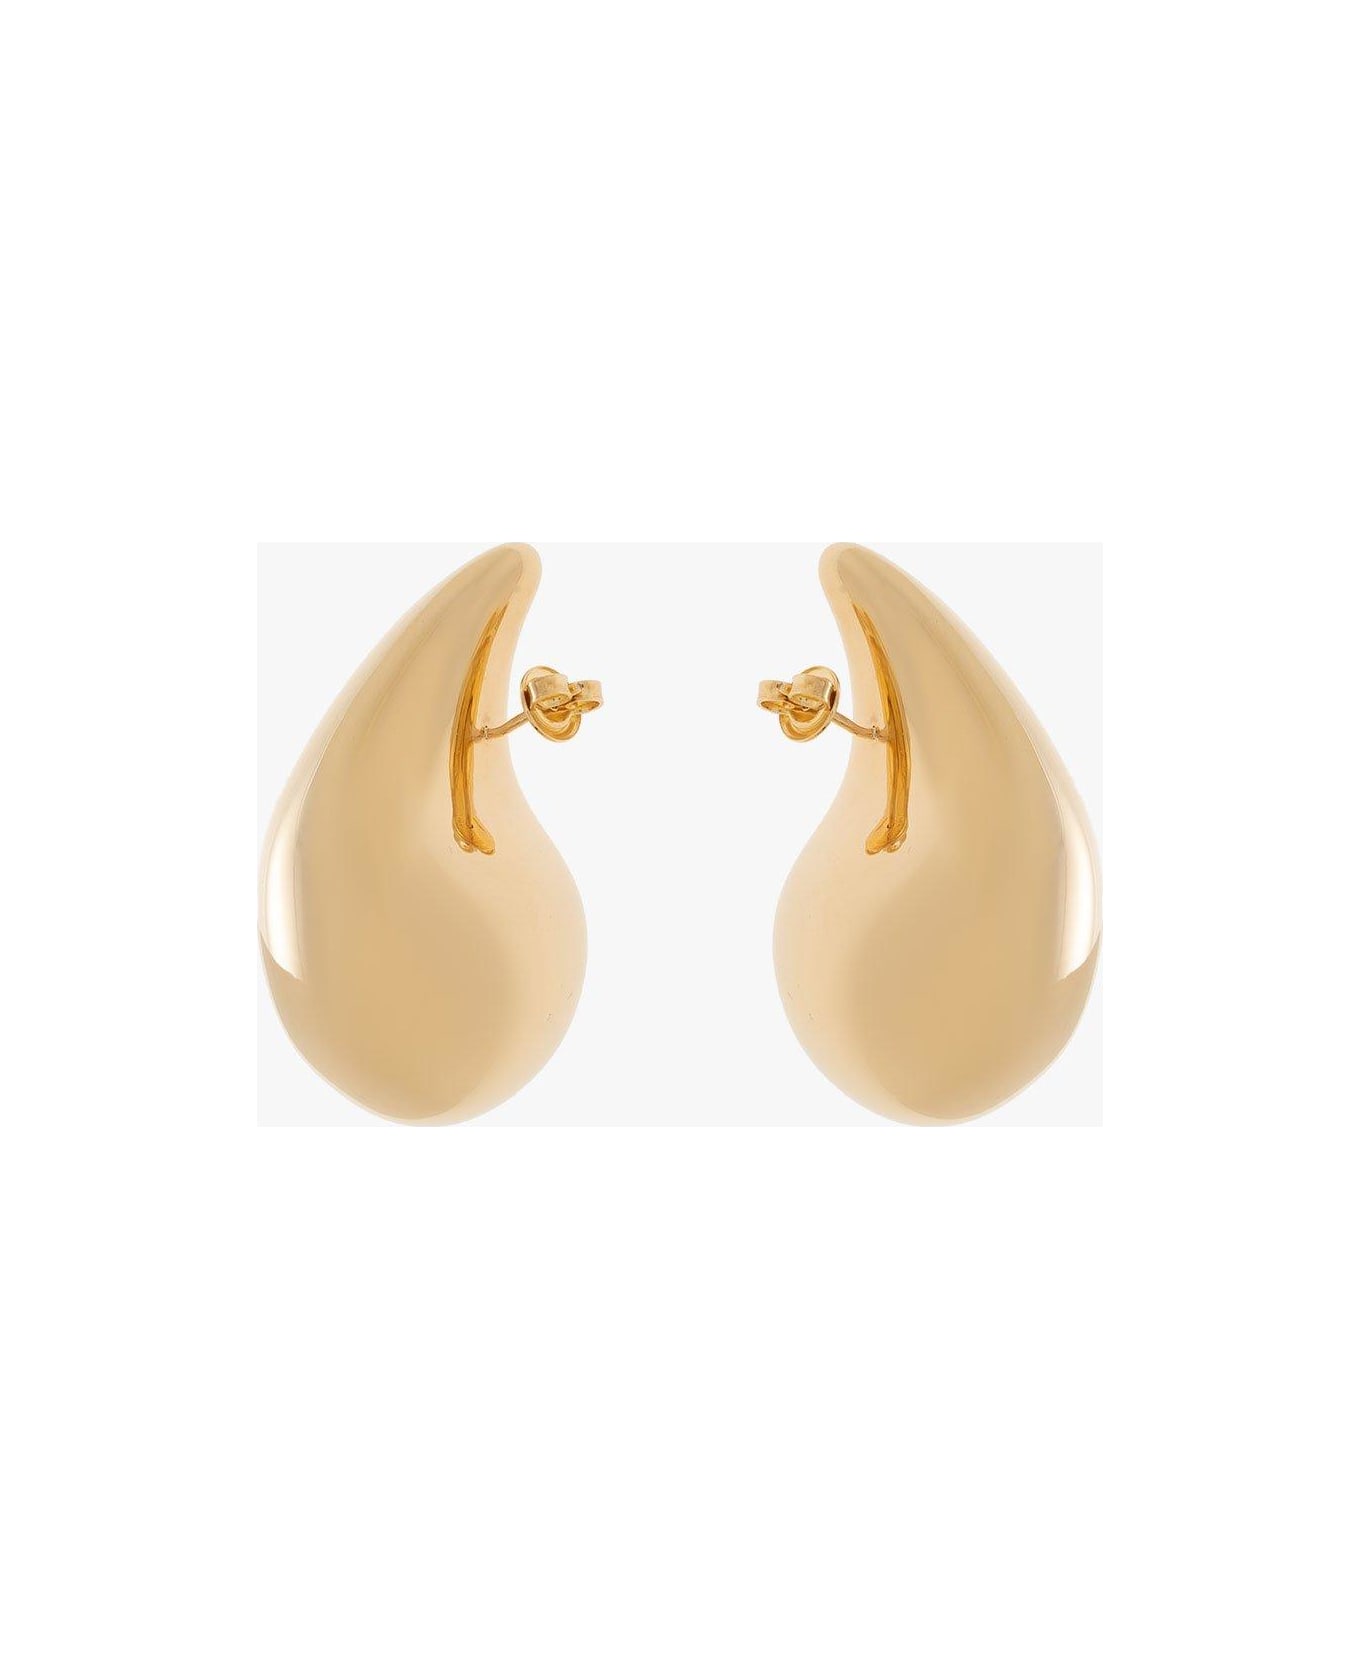 Bottega Veneta Drop Earrings - Yellow gold イヤリング